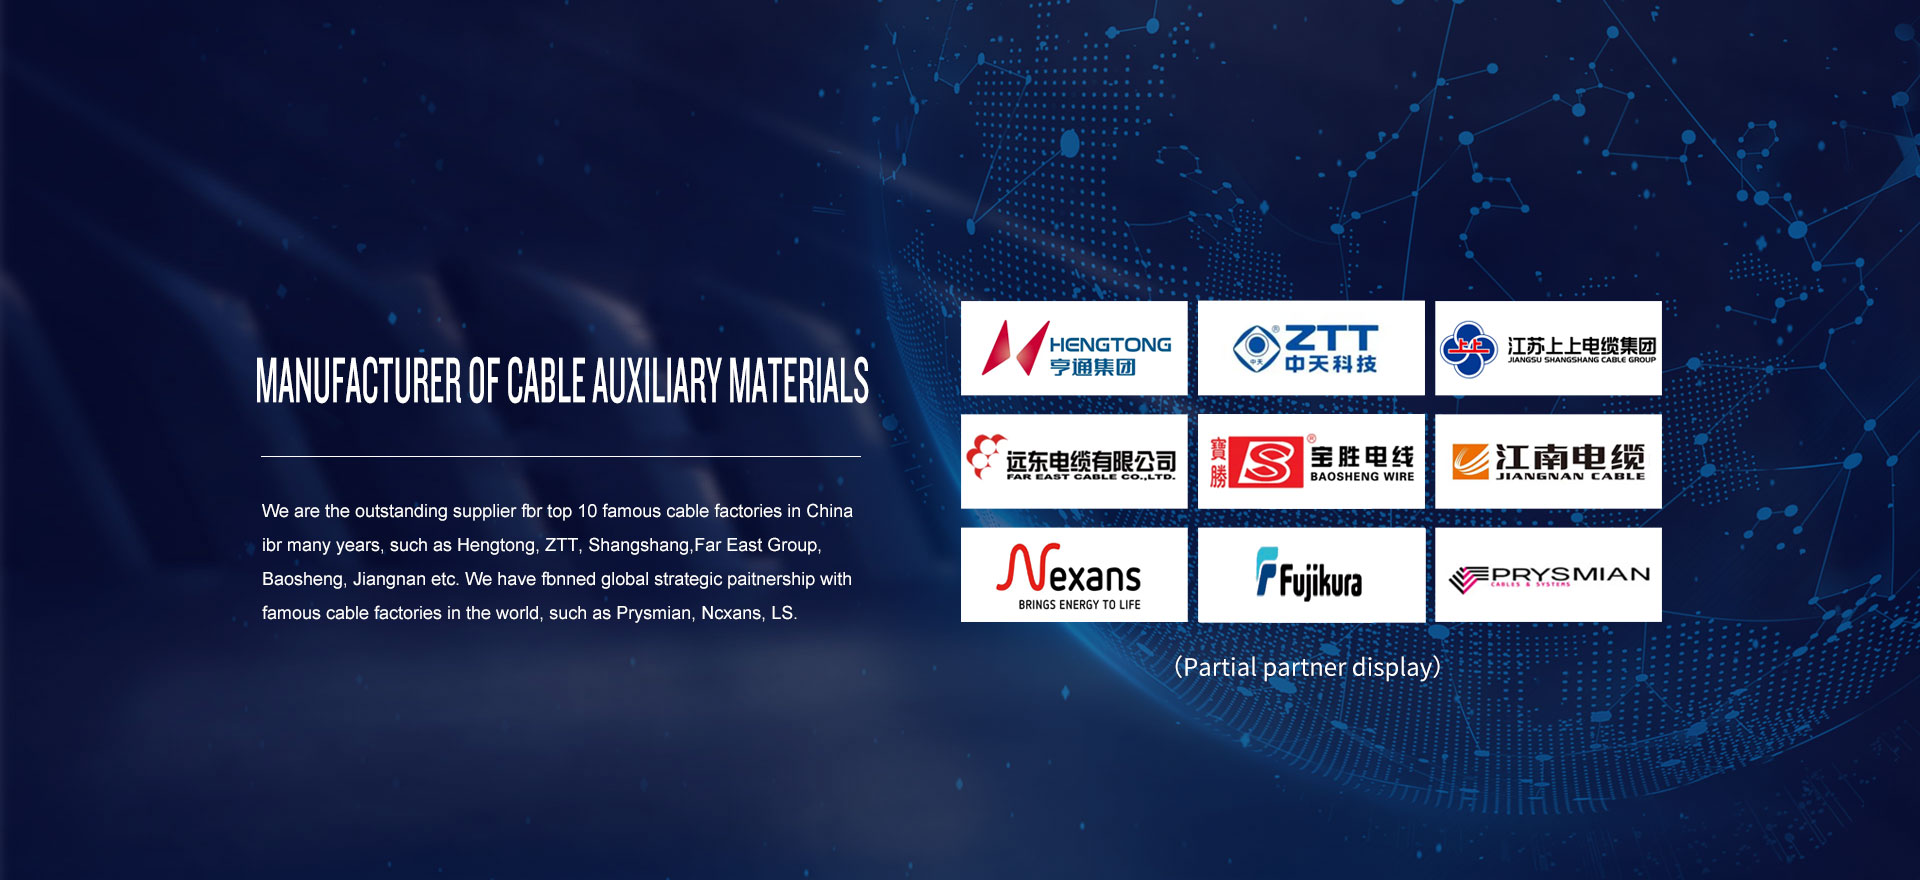 Yangzhou Tengfei Cable Electrical Materials Co., Ltd